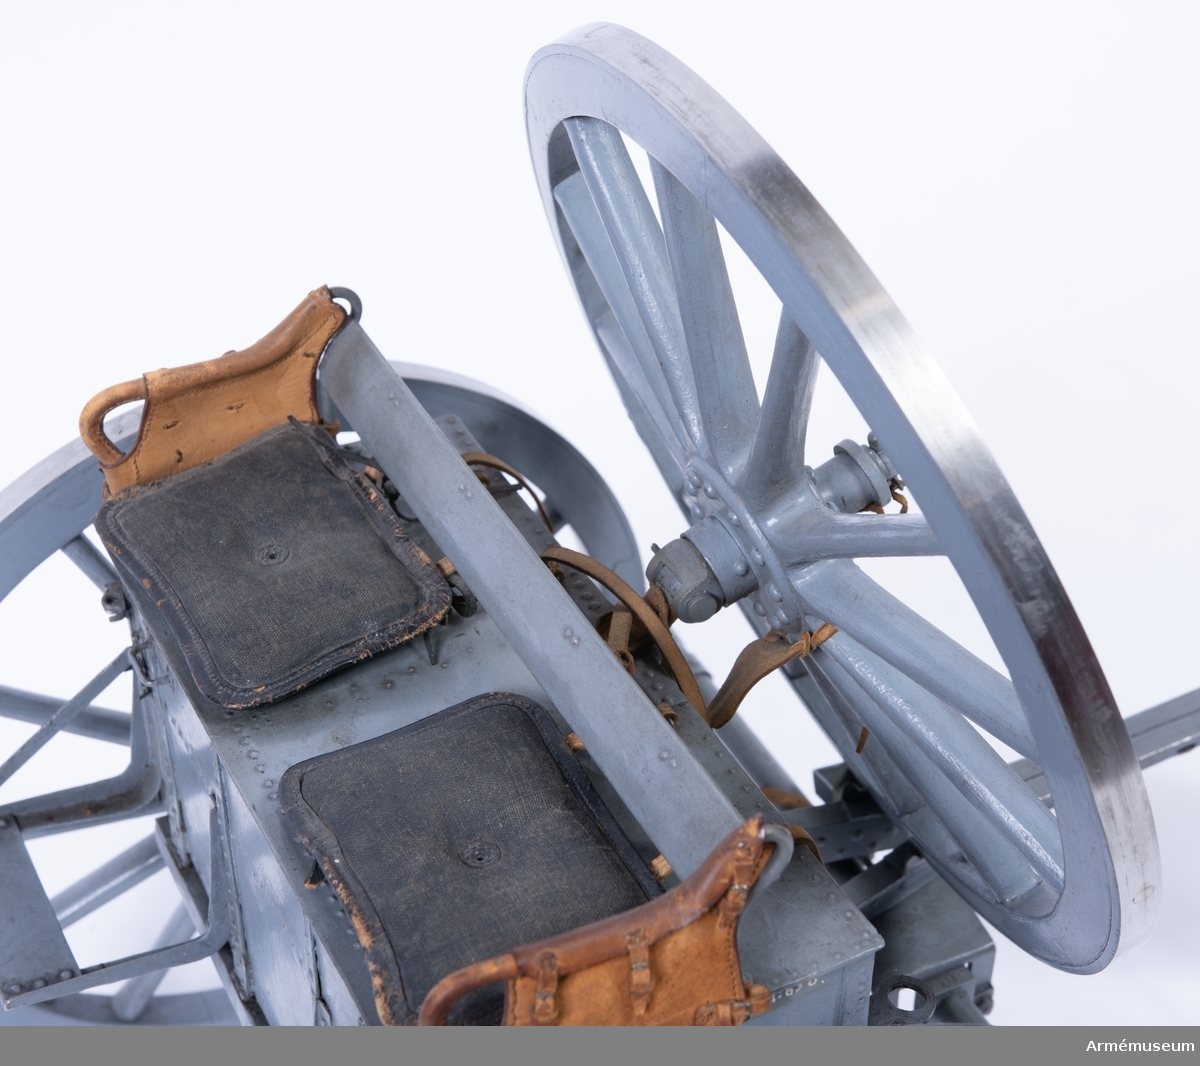 Grupp F I.
Skala 1/8.
Tillverkad enligt Arméförvaltningens artilleridepartement, skr 4/2 1891.
Med reservhjul.